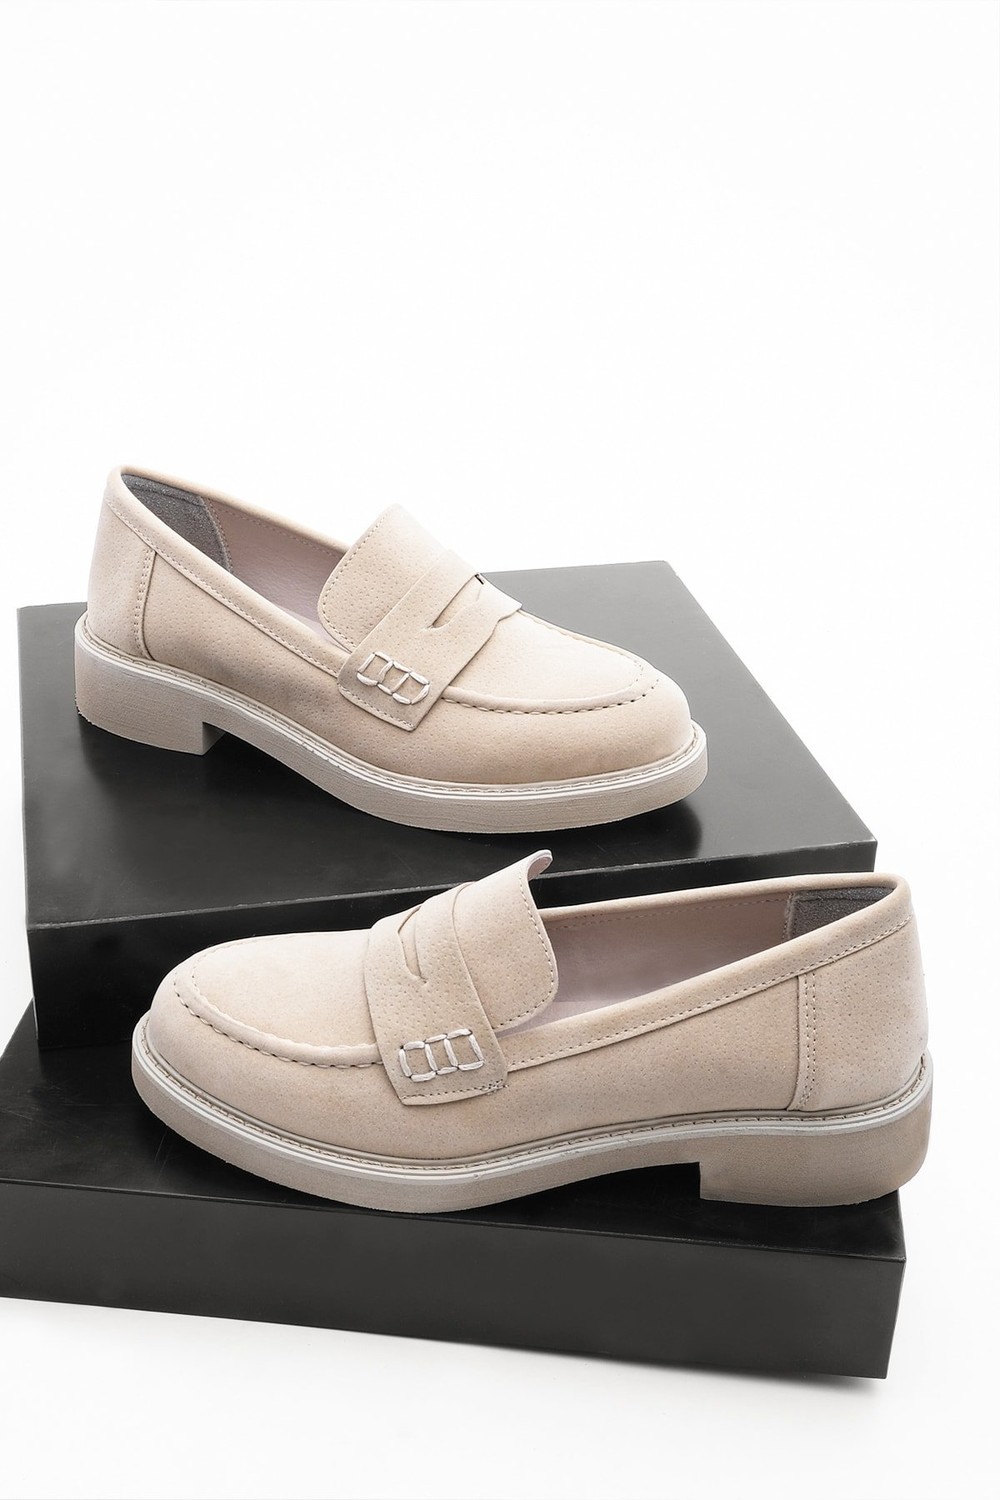 Marjin Loafer Shoes - Beige - Flat